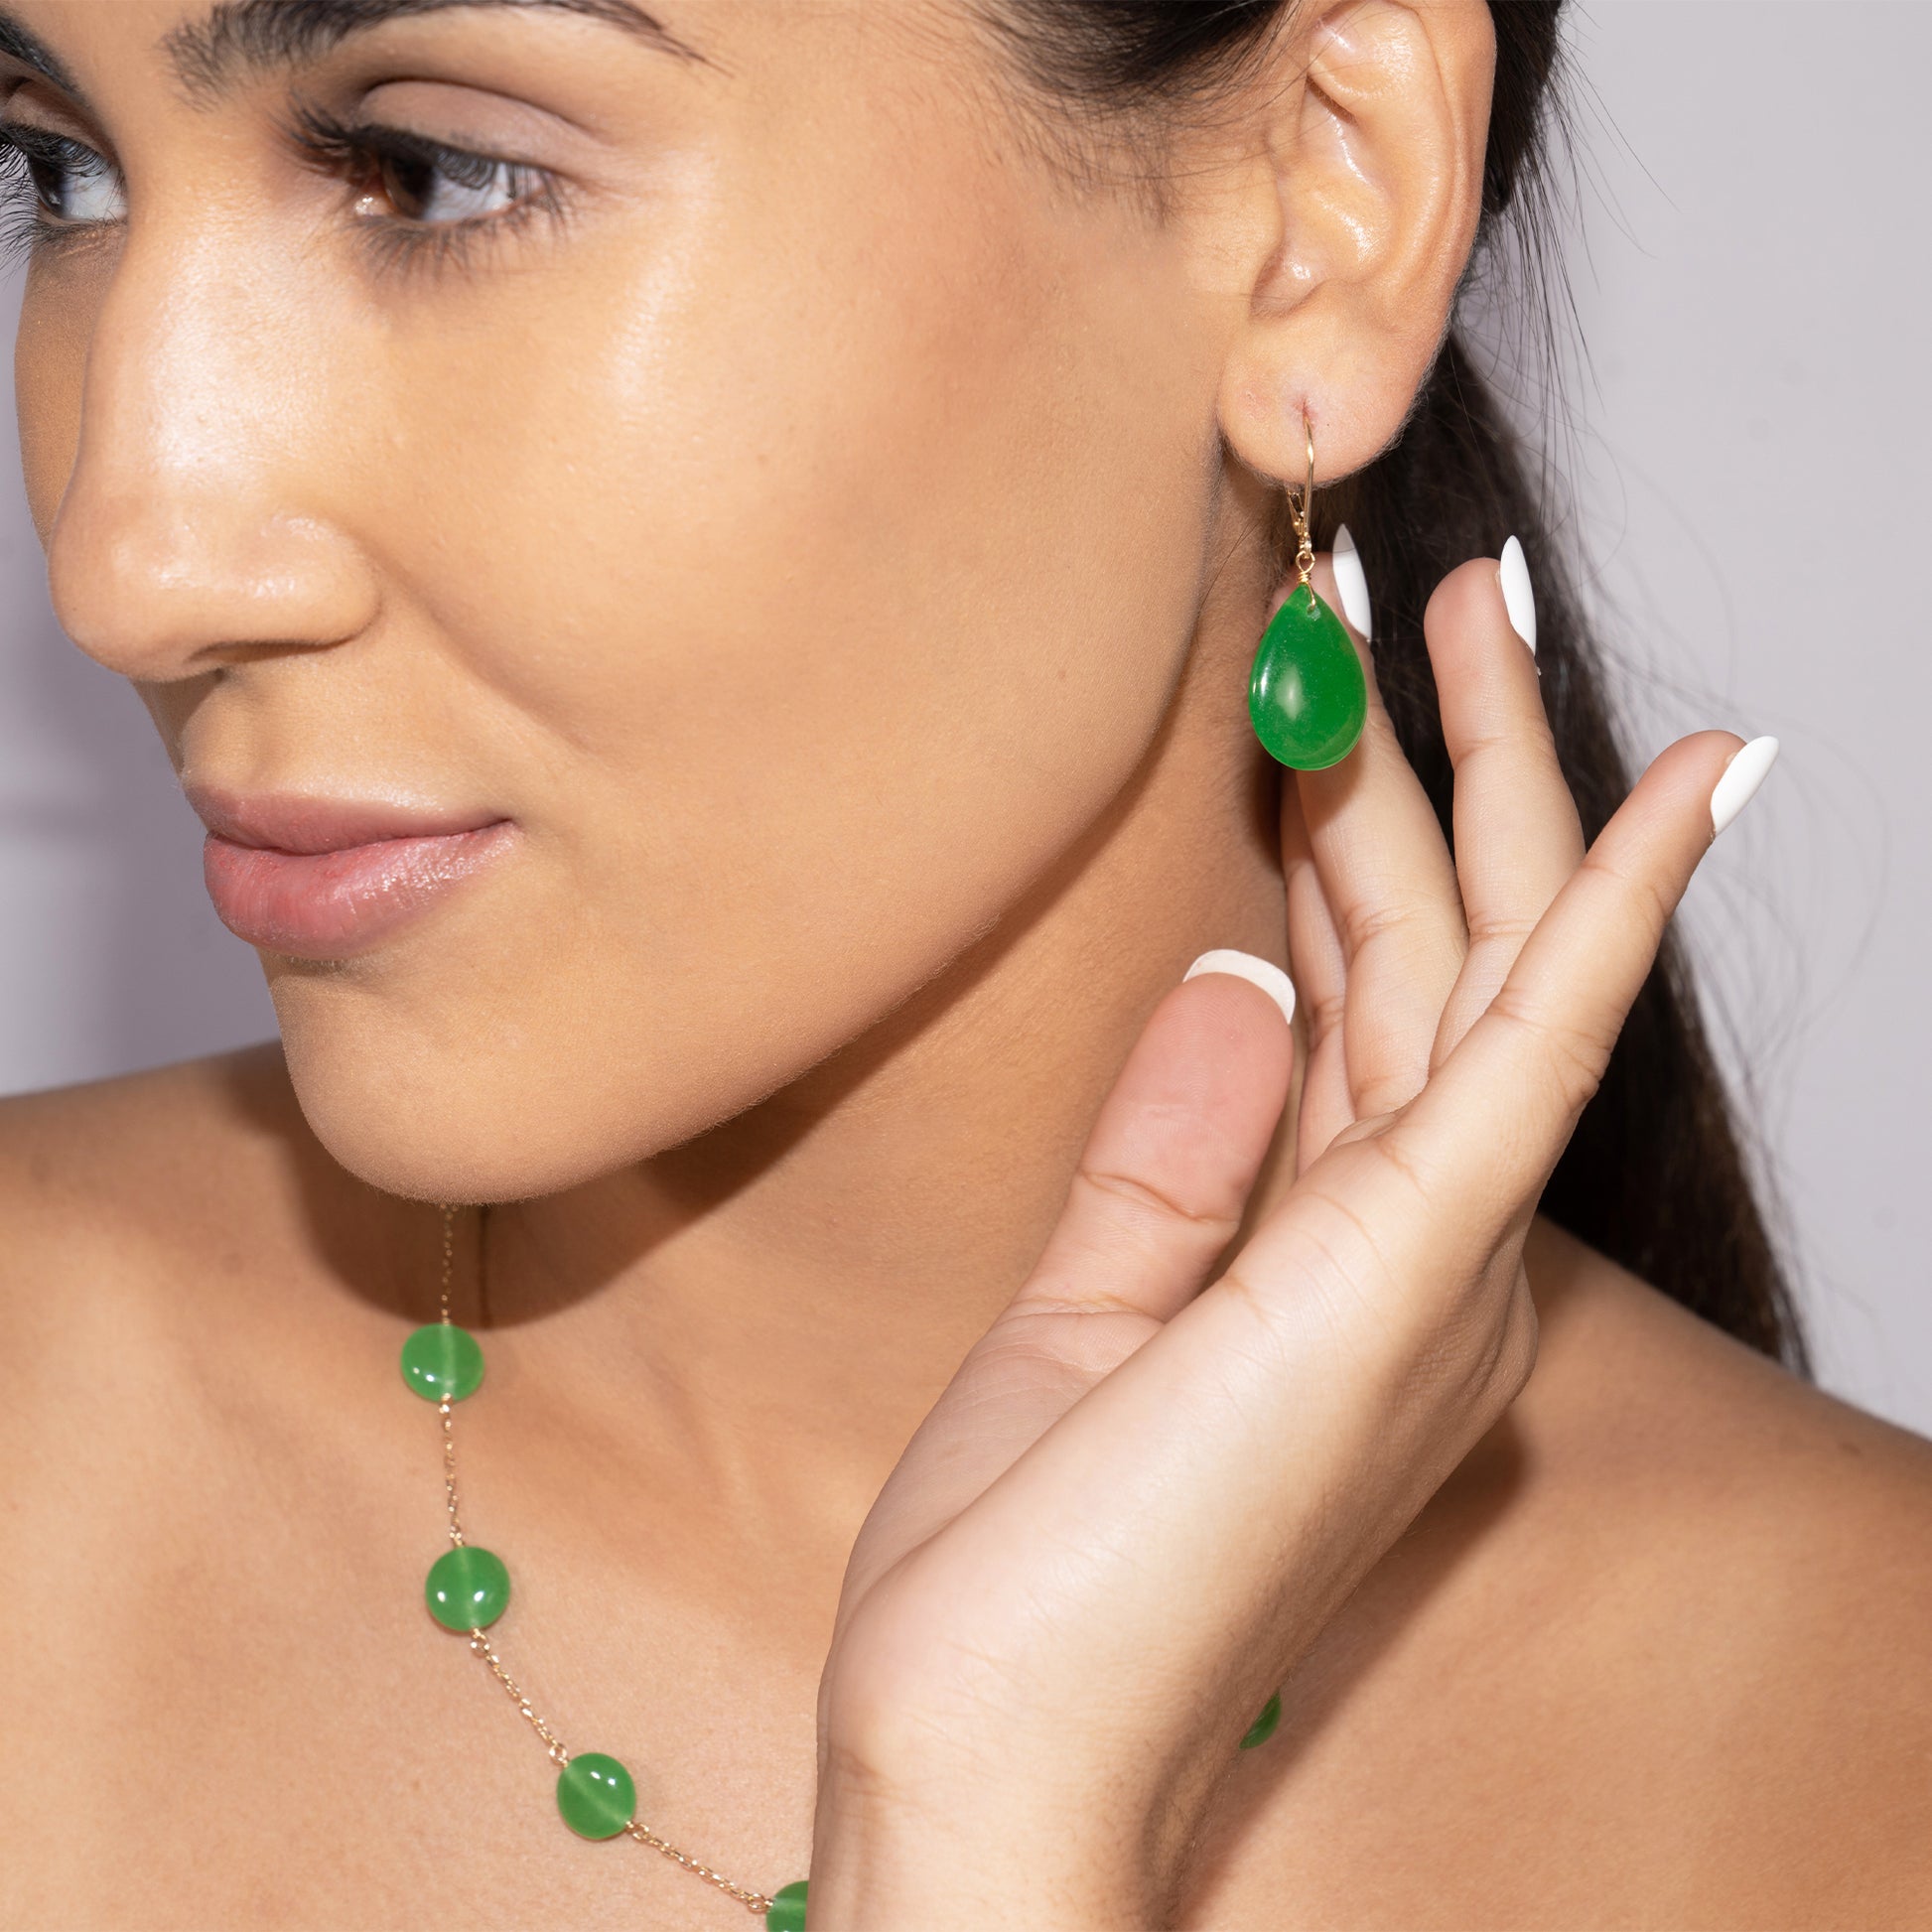 14k Green Jade Pear Shape Leverback Earring